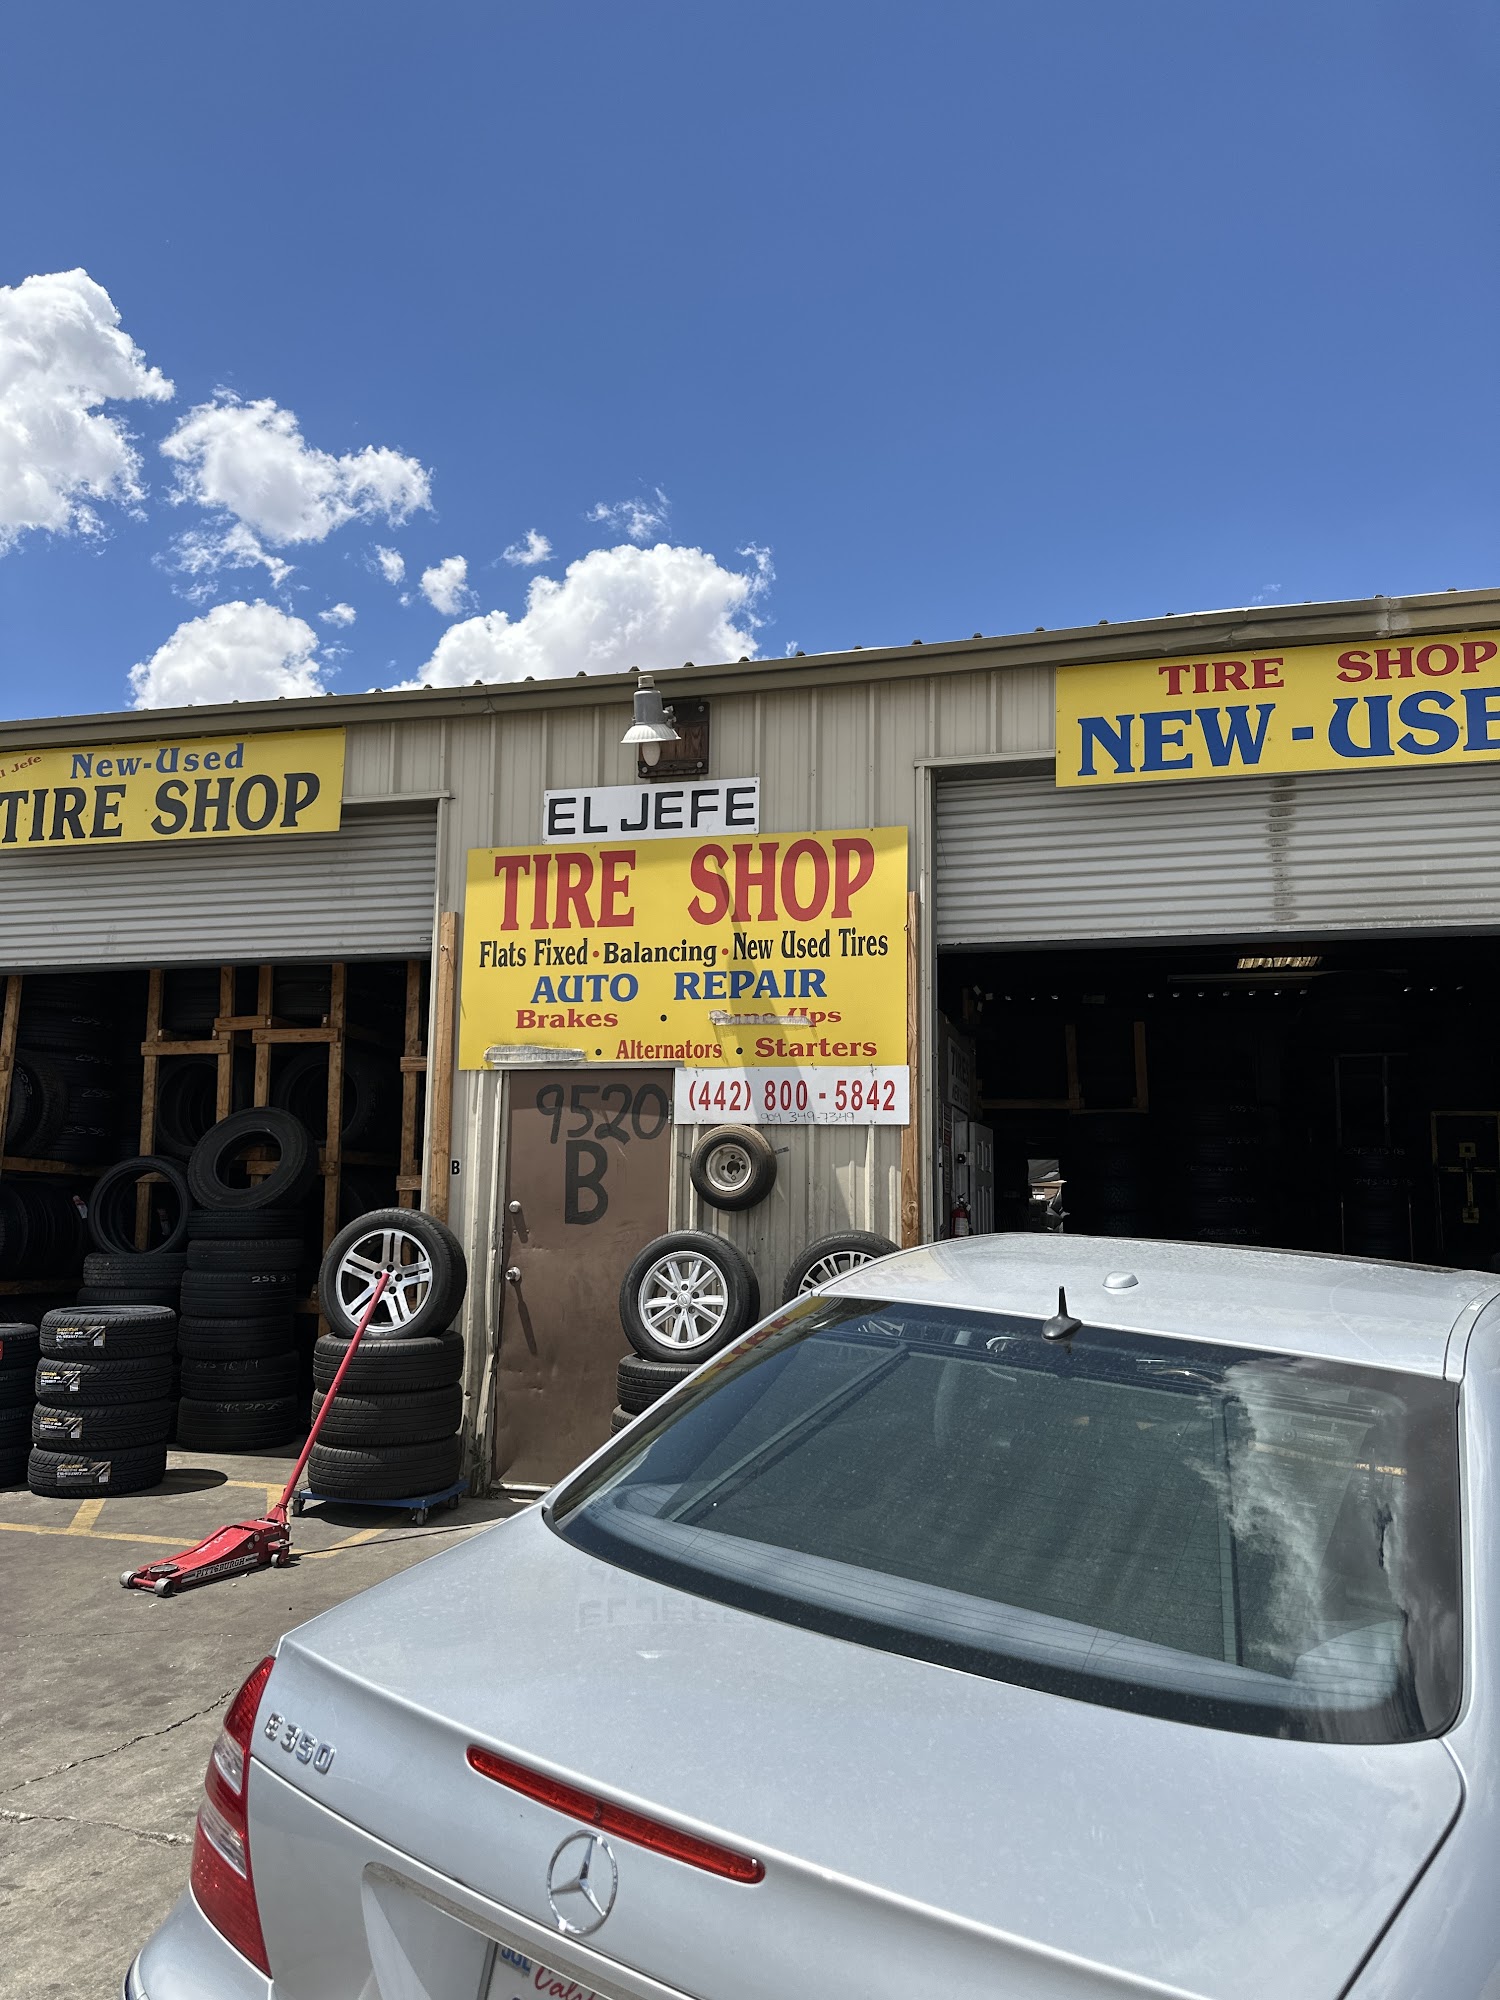 El Jefe Tire Shop